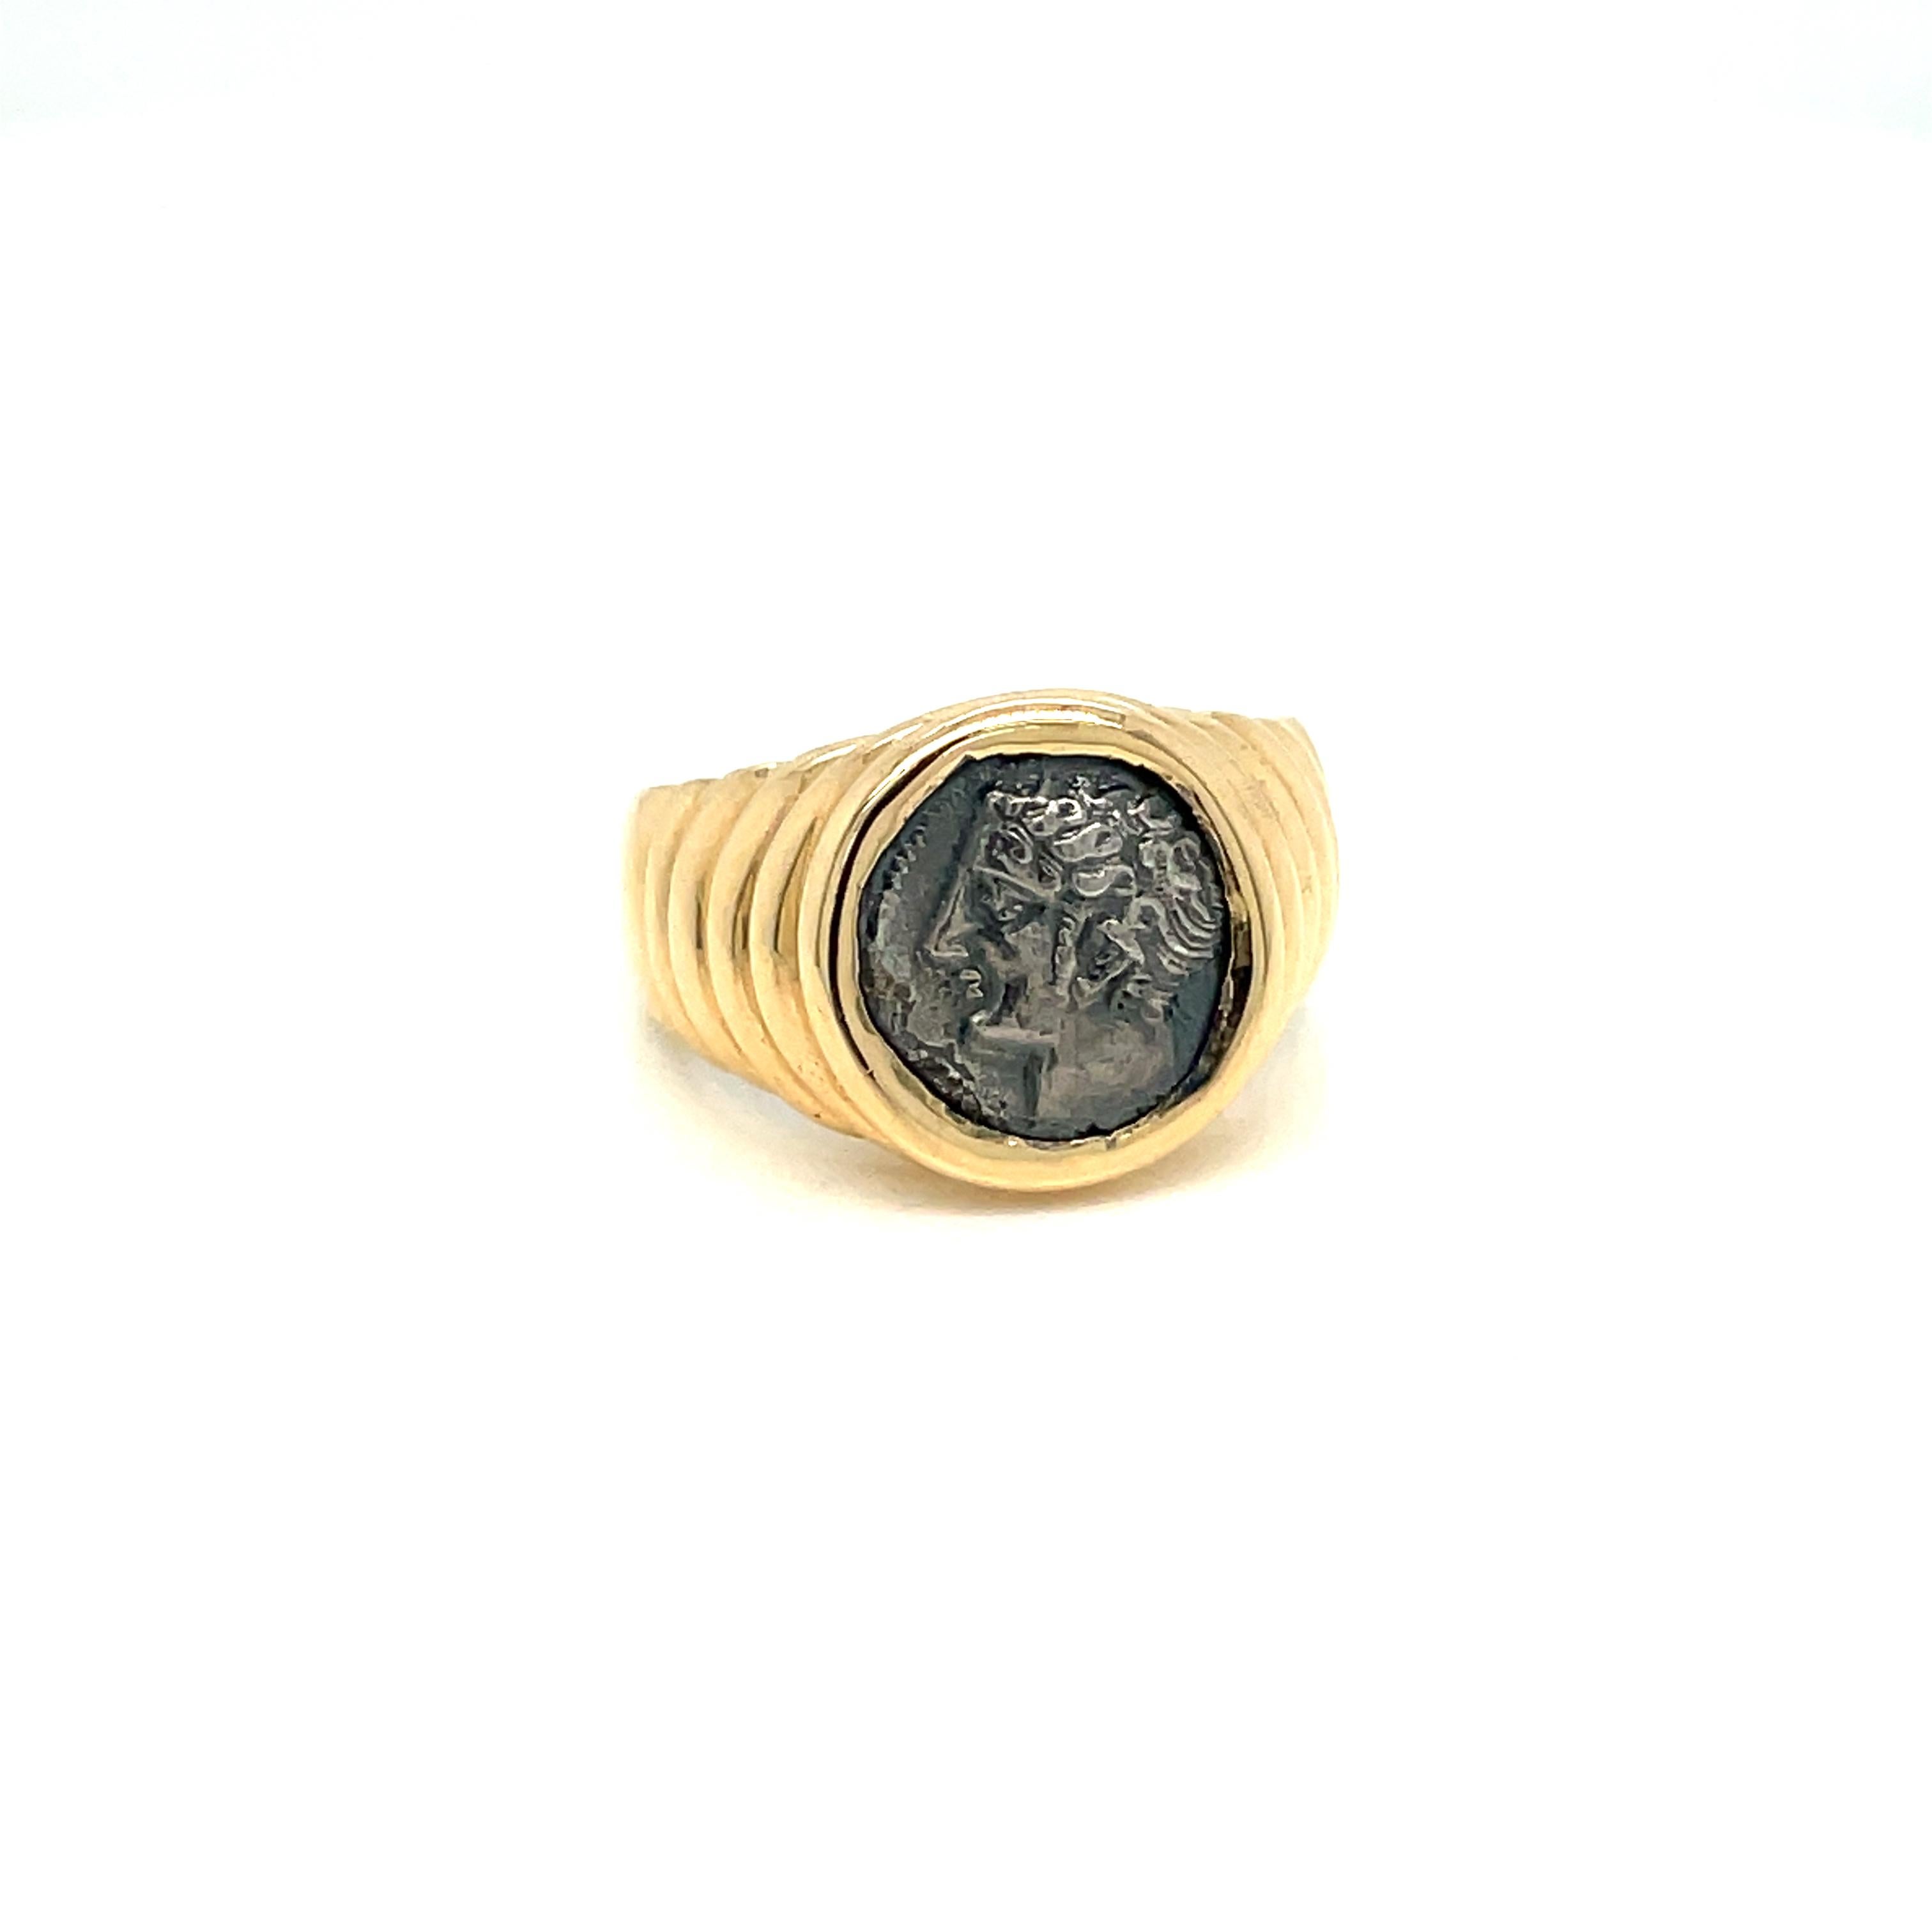 Bulgari Ring aus 18 Karat Gold aus der Kollektion Monet mit einer antiken Gallia Massalia Silbermünze. Apollo hat gezeigt, wie verführerisch eine 2.000 Jahre alte Münze aussehen kann, wenn sie mit einer kühnen, modernen Fassung kombiniert wird.